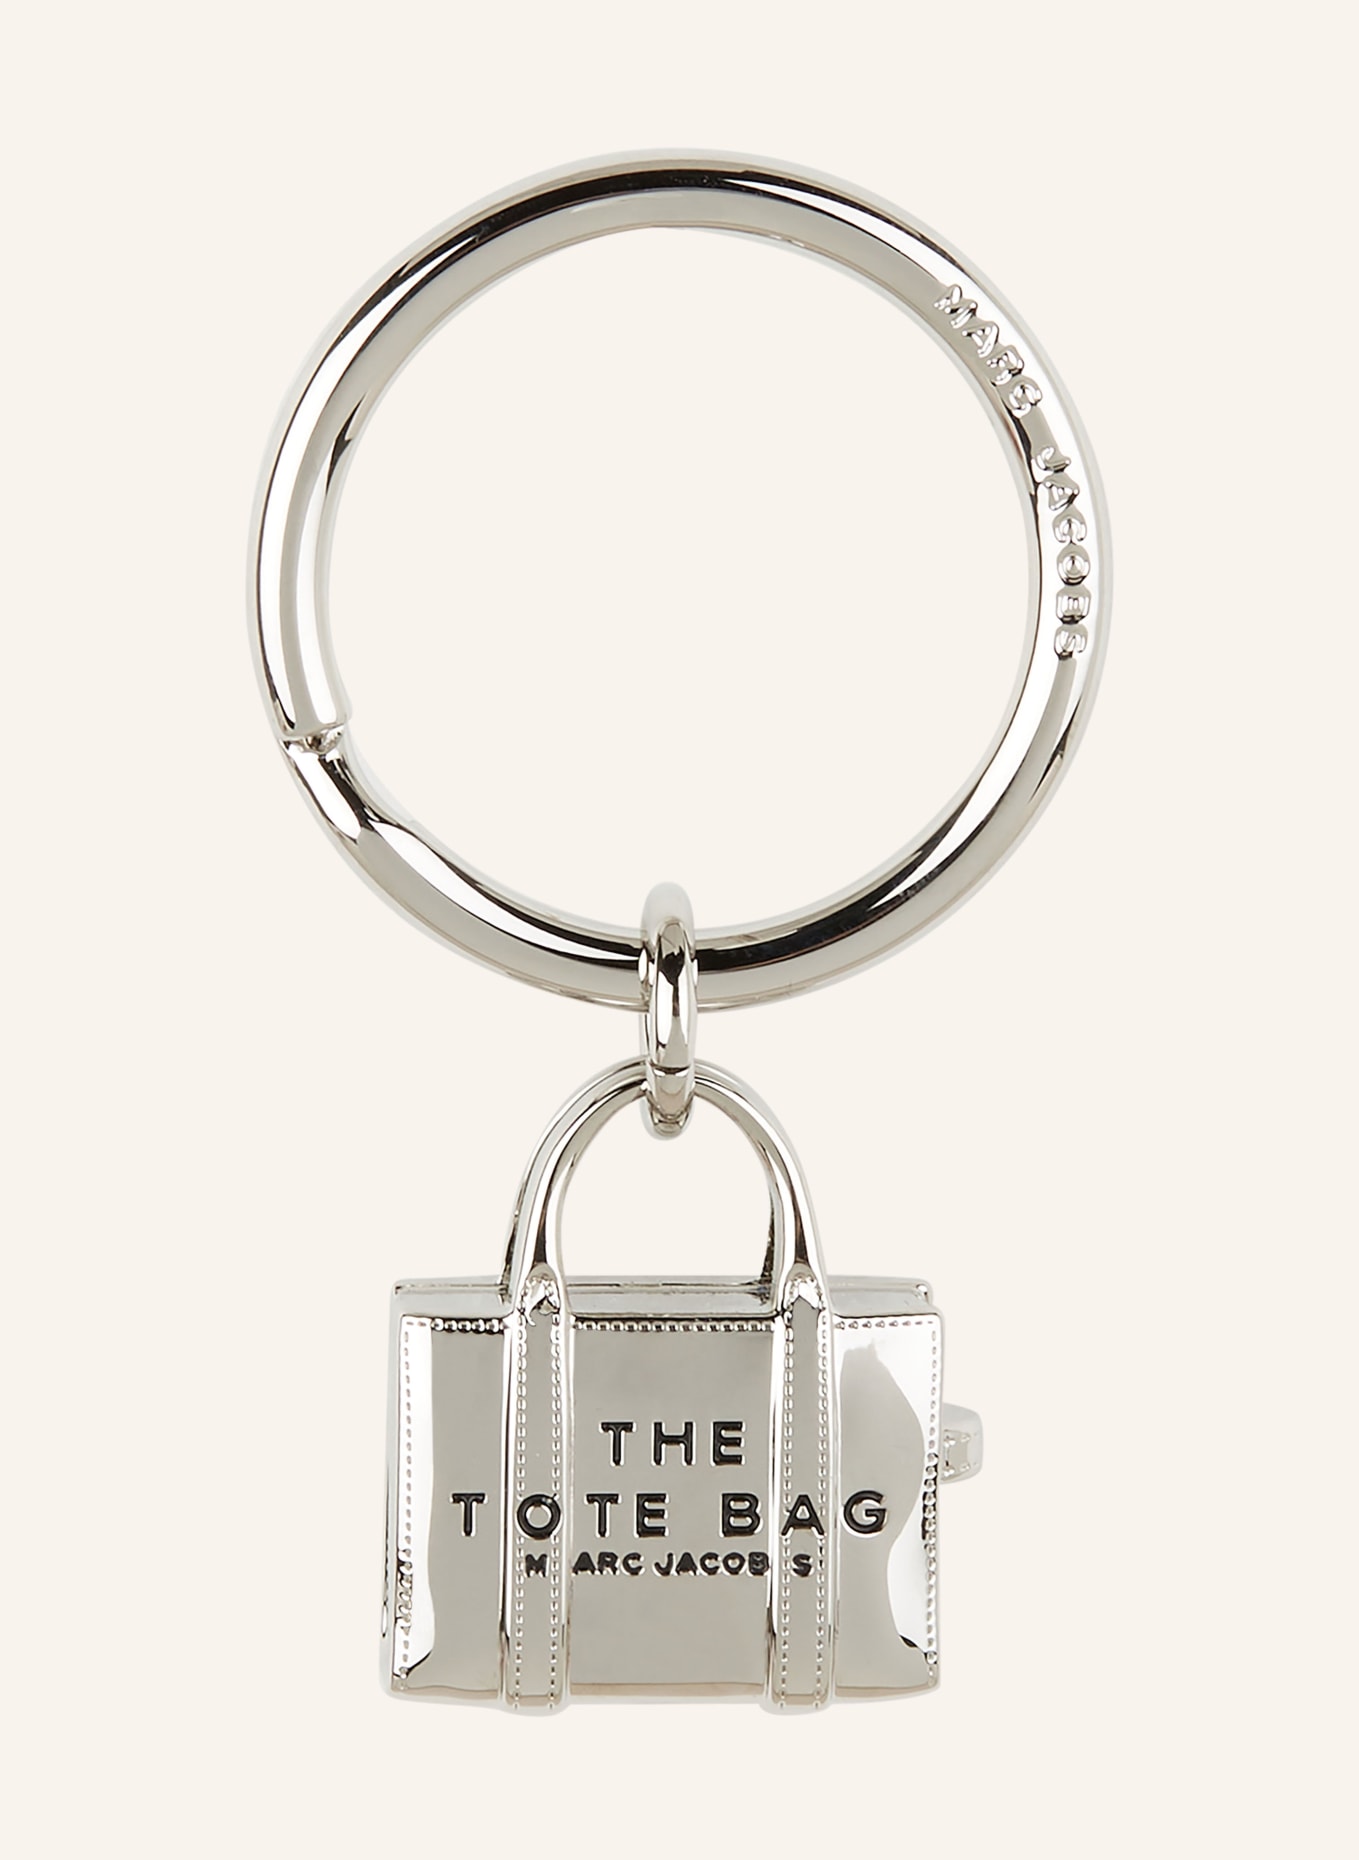 MARC JACOBS Schlüssel- und Taschenanhänger THE TOTE BAG, Farbe: SILBER (Bild 1)